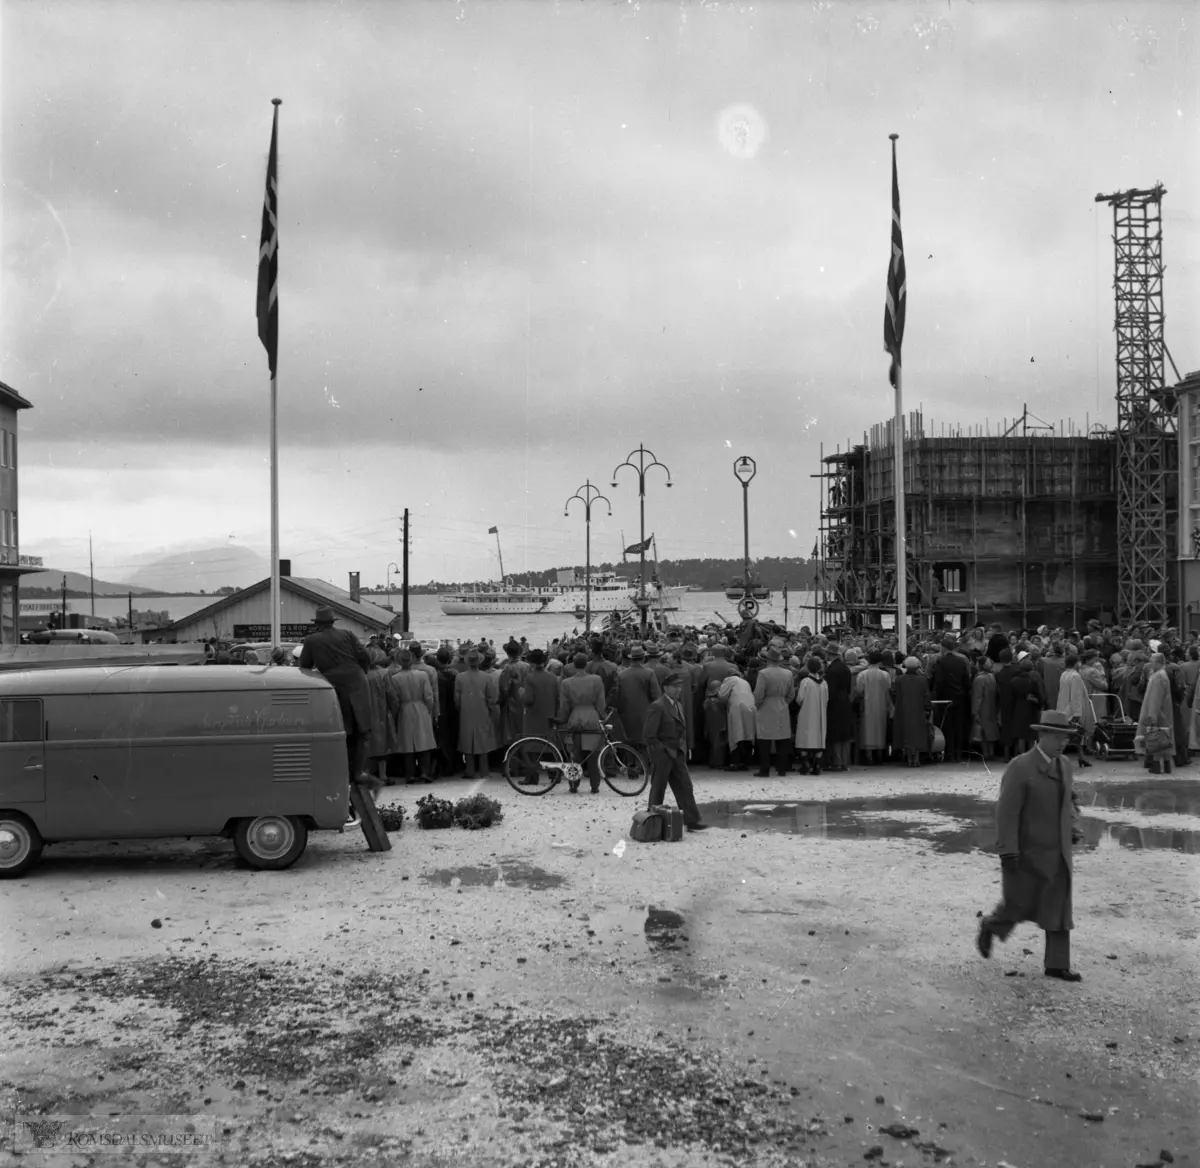 jhg829gbz, "Avdukingen av monumentet ved Kongebjørka i 1955. Med Kong Haakon, Kronsprins Olav, fylkesmann Oksvik, lottene osv."